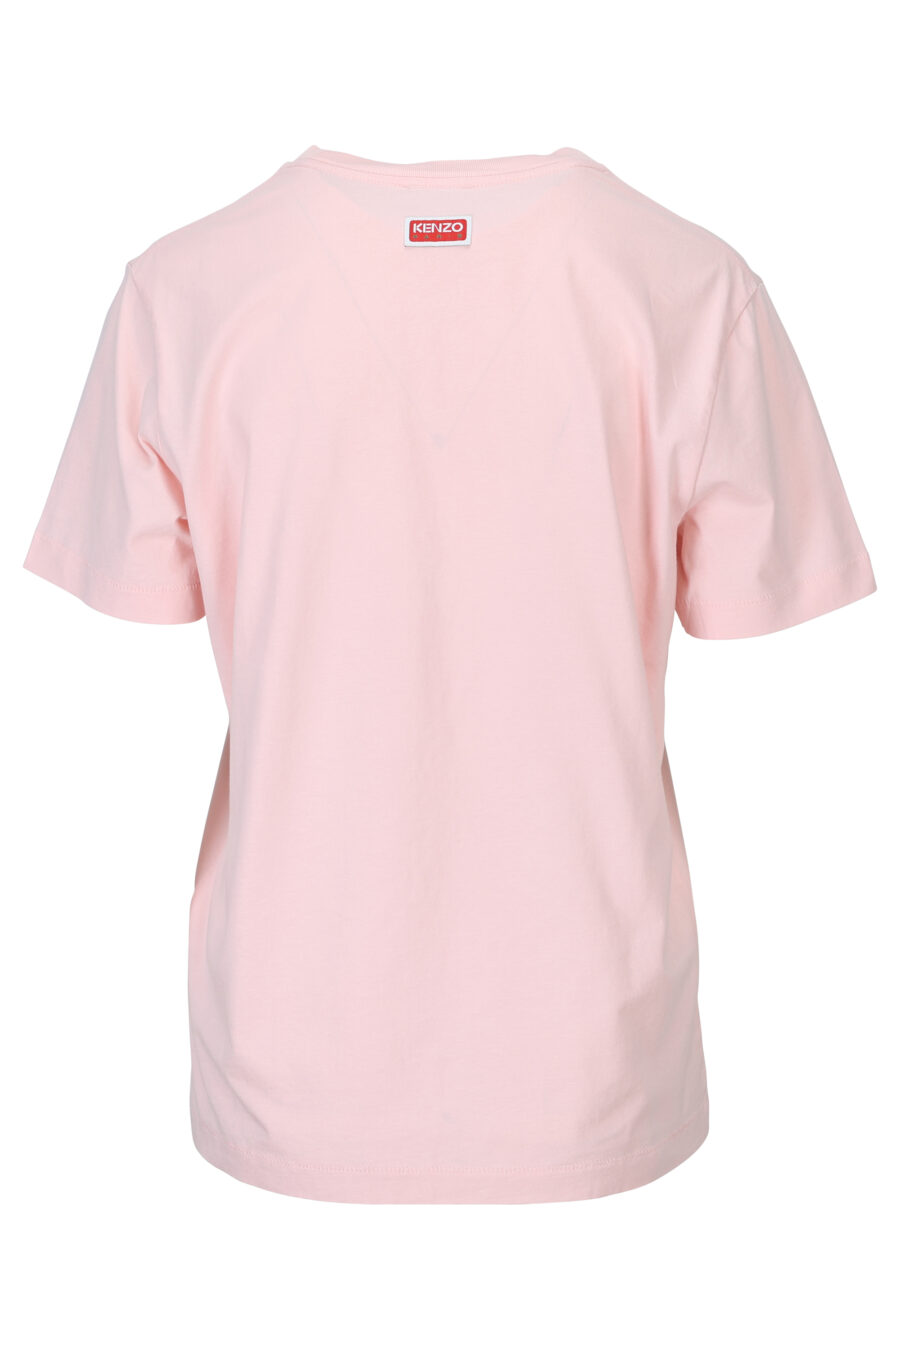 T-shirt rose avec maxilogo "boke flower" - 3612230483163 1